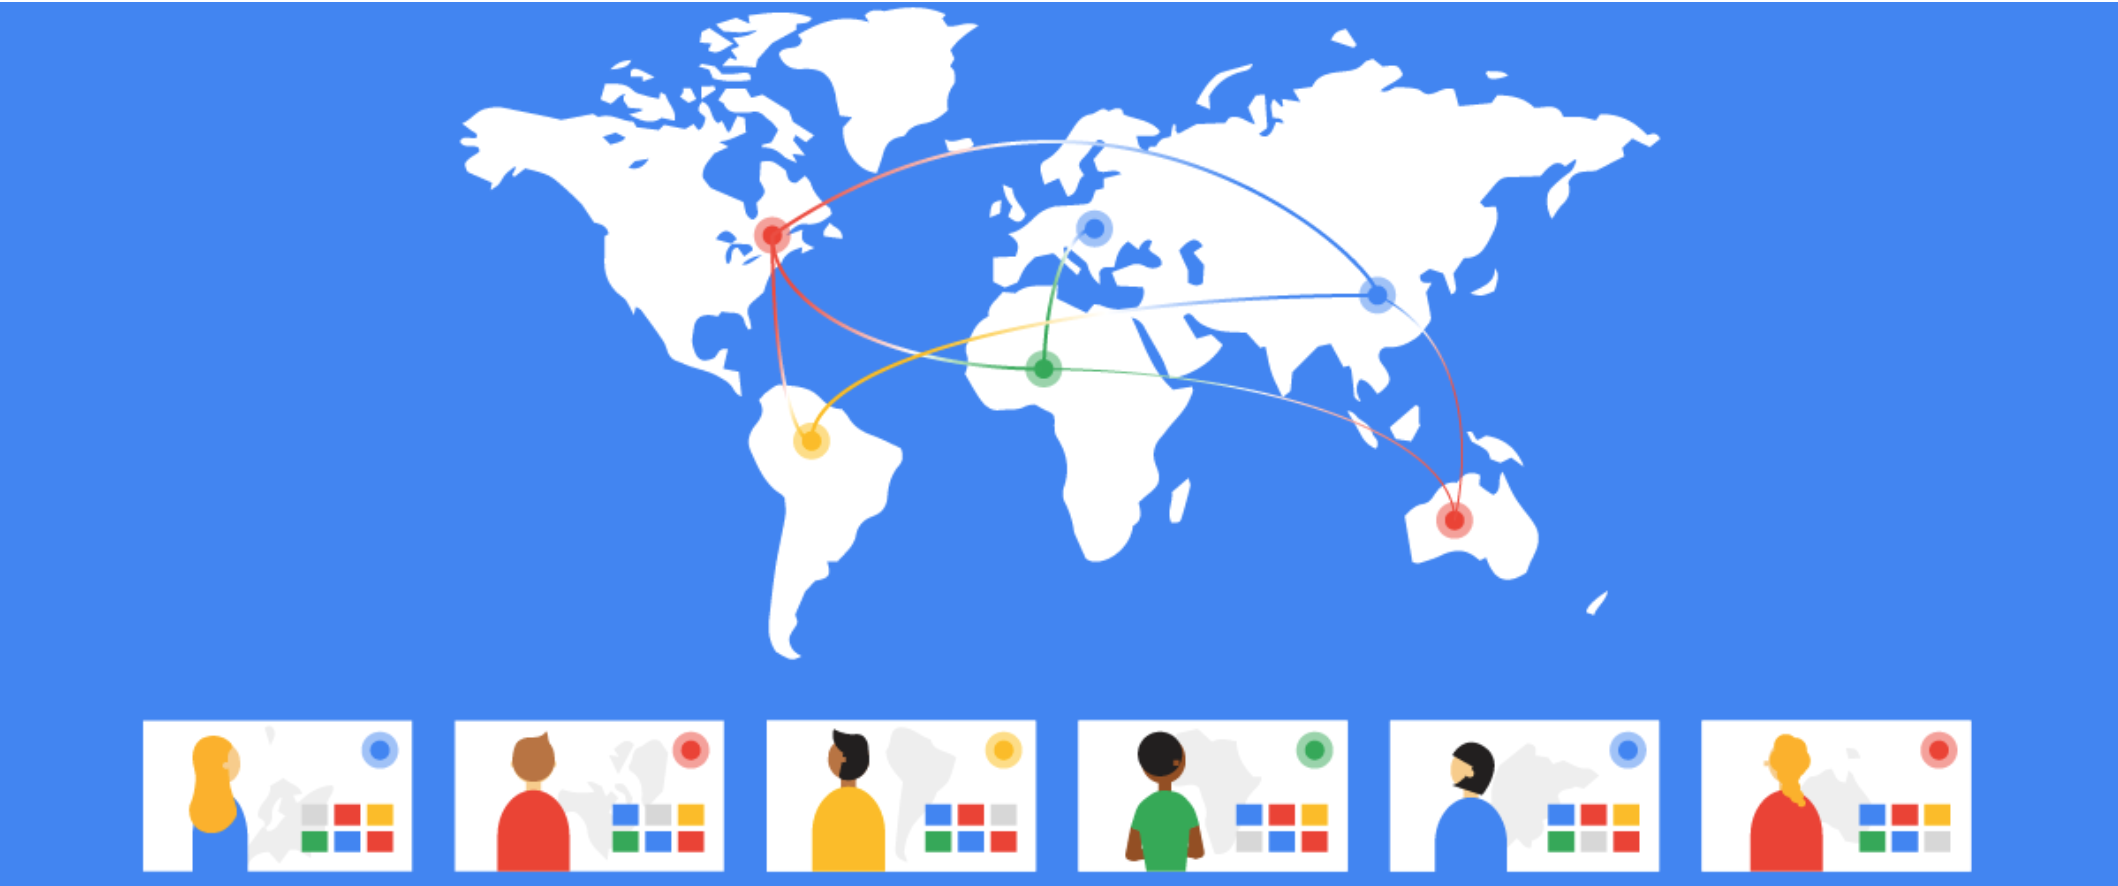 Google miễn phí công cụ video hội nghị Google Meet cao cấp cho mọi người dùng trên toàn thế giới